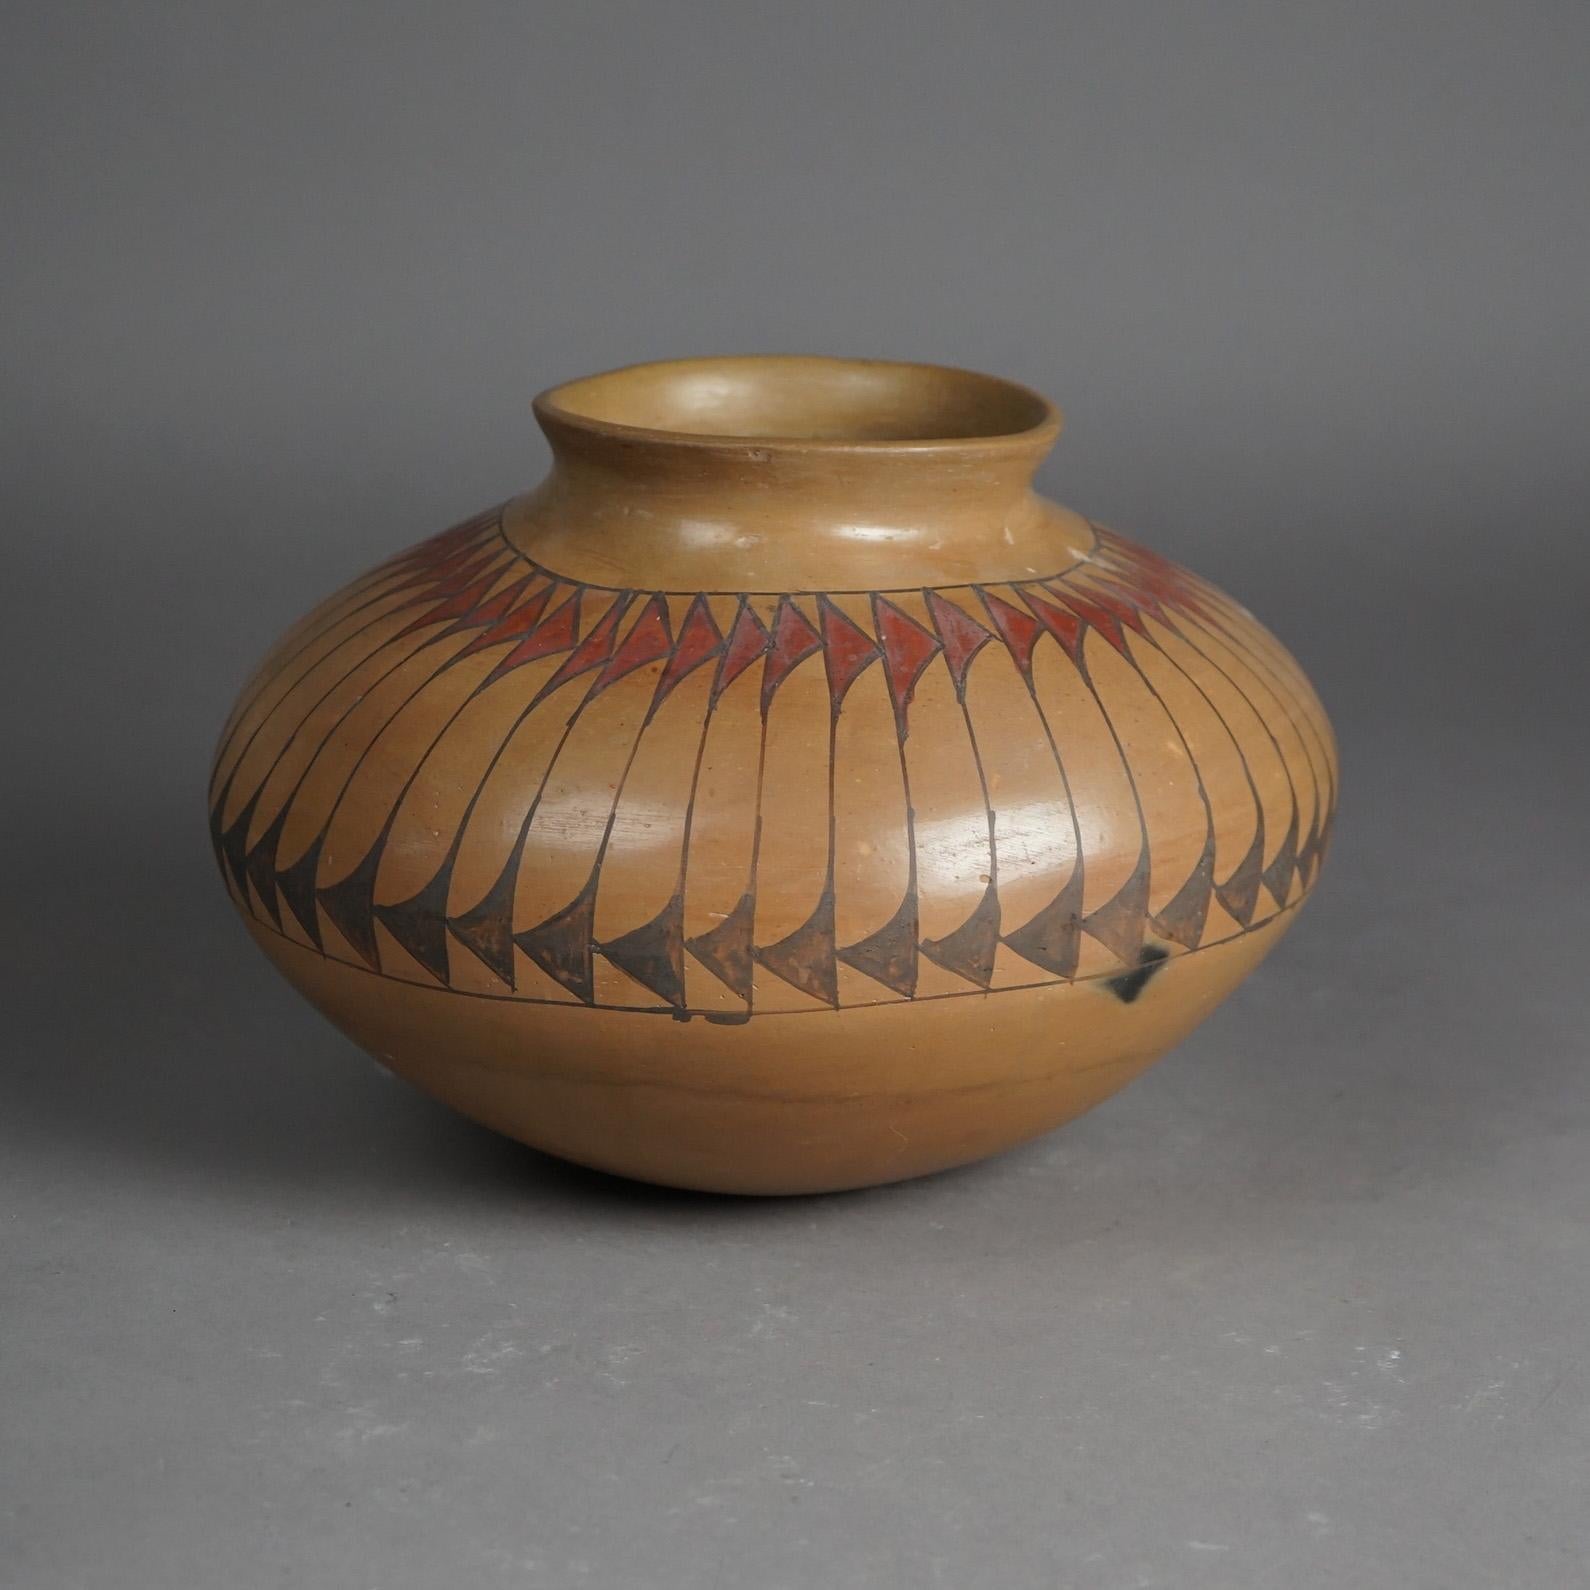 Eine antike südwestliche amerikanische Indianer Taos Acoma olla bietet Keramik Konstruktion mit stilisierten Feder Band, c1930

Maße - 7,75 